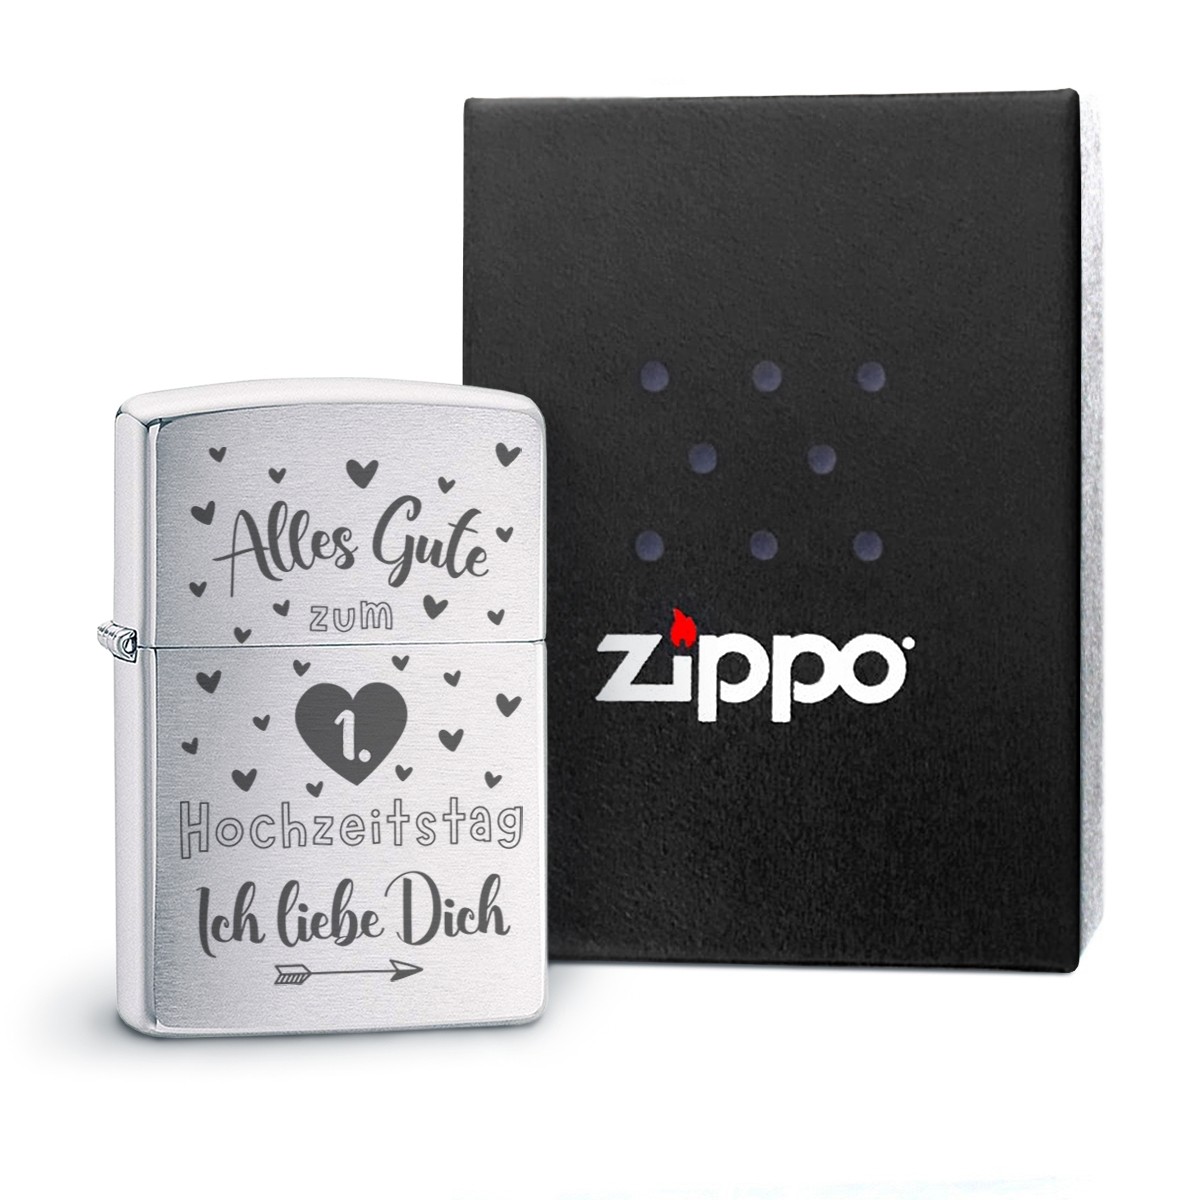 Original Zippo Benzinfeuerzeug: Alles Gute zum Hochzeitstag